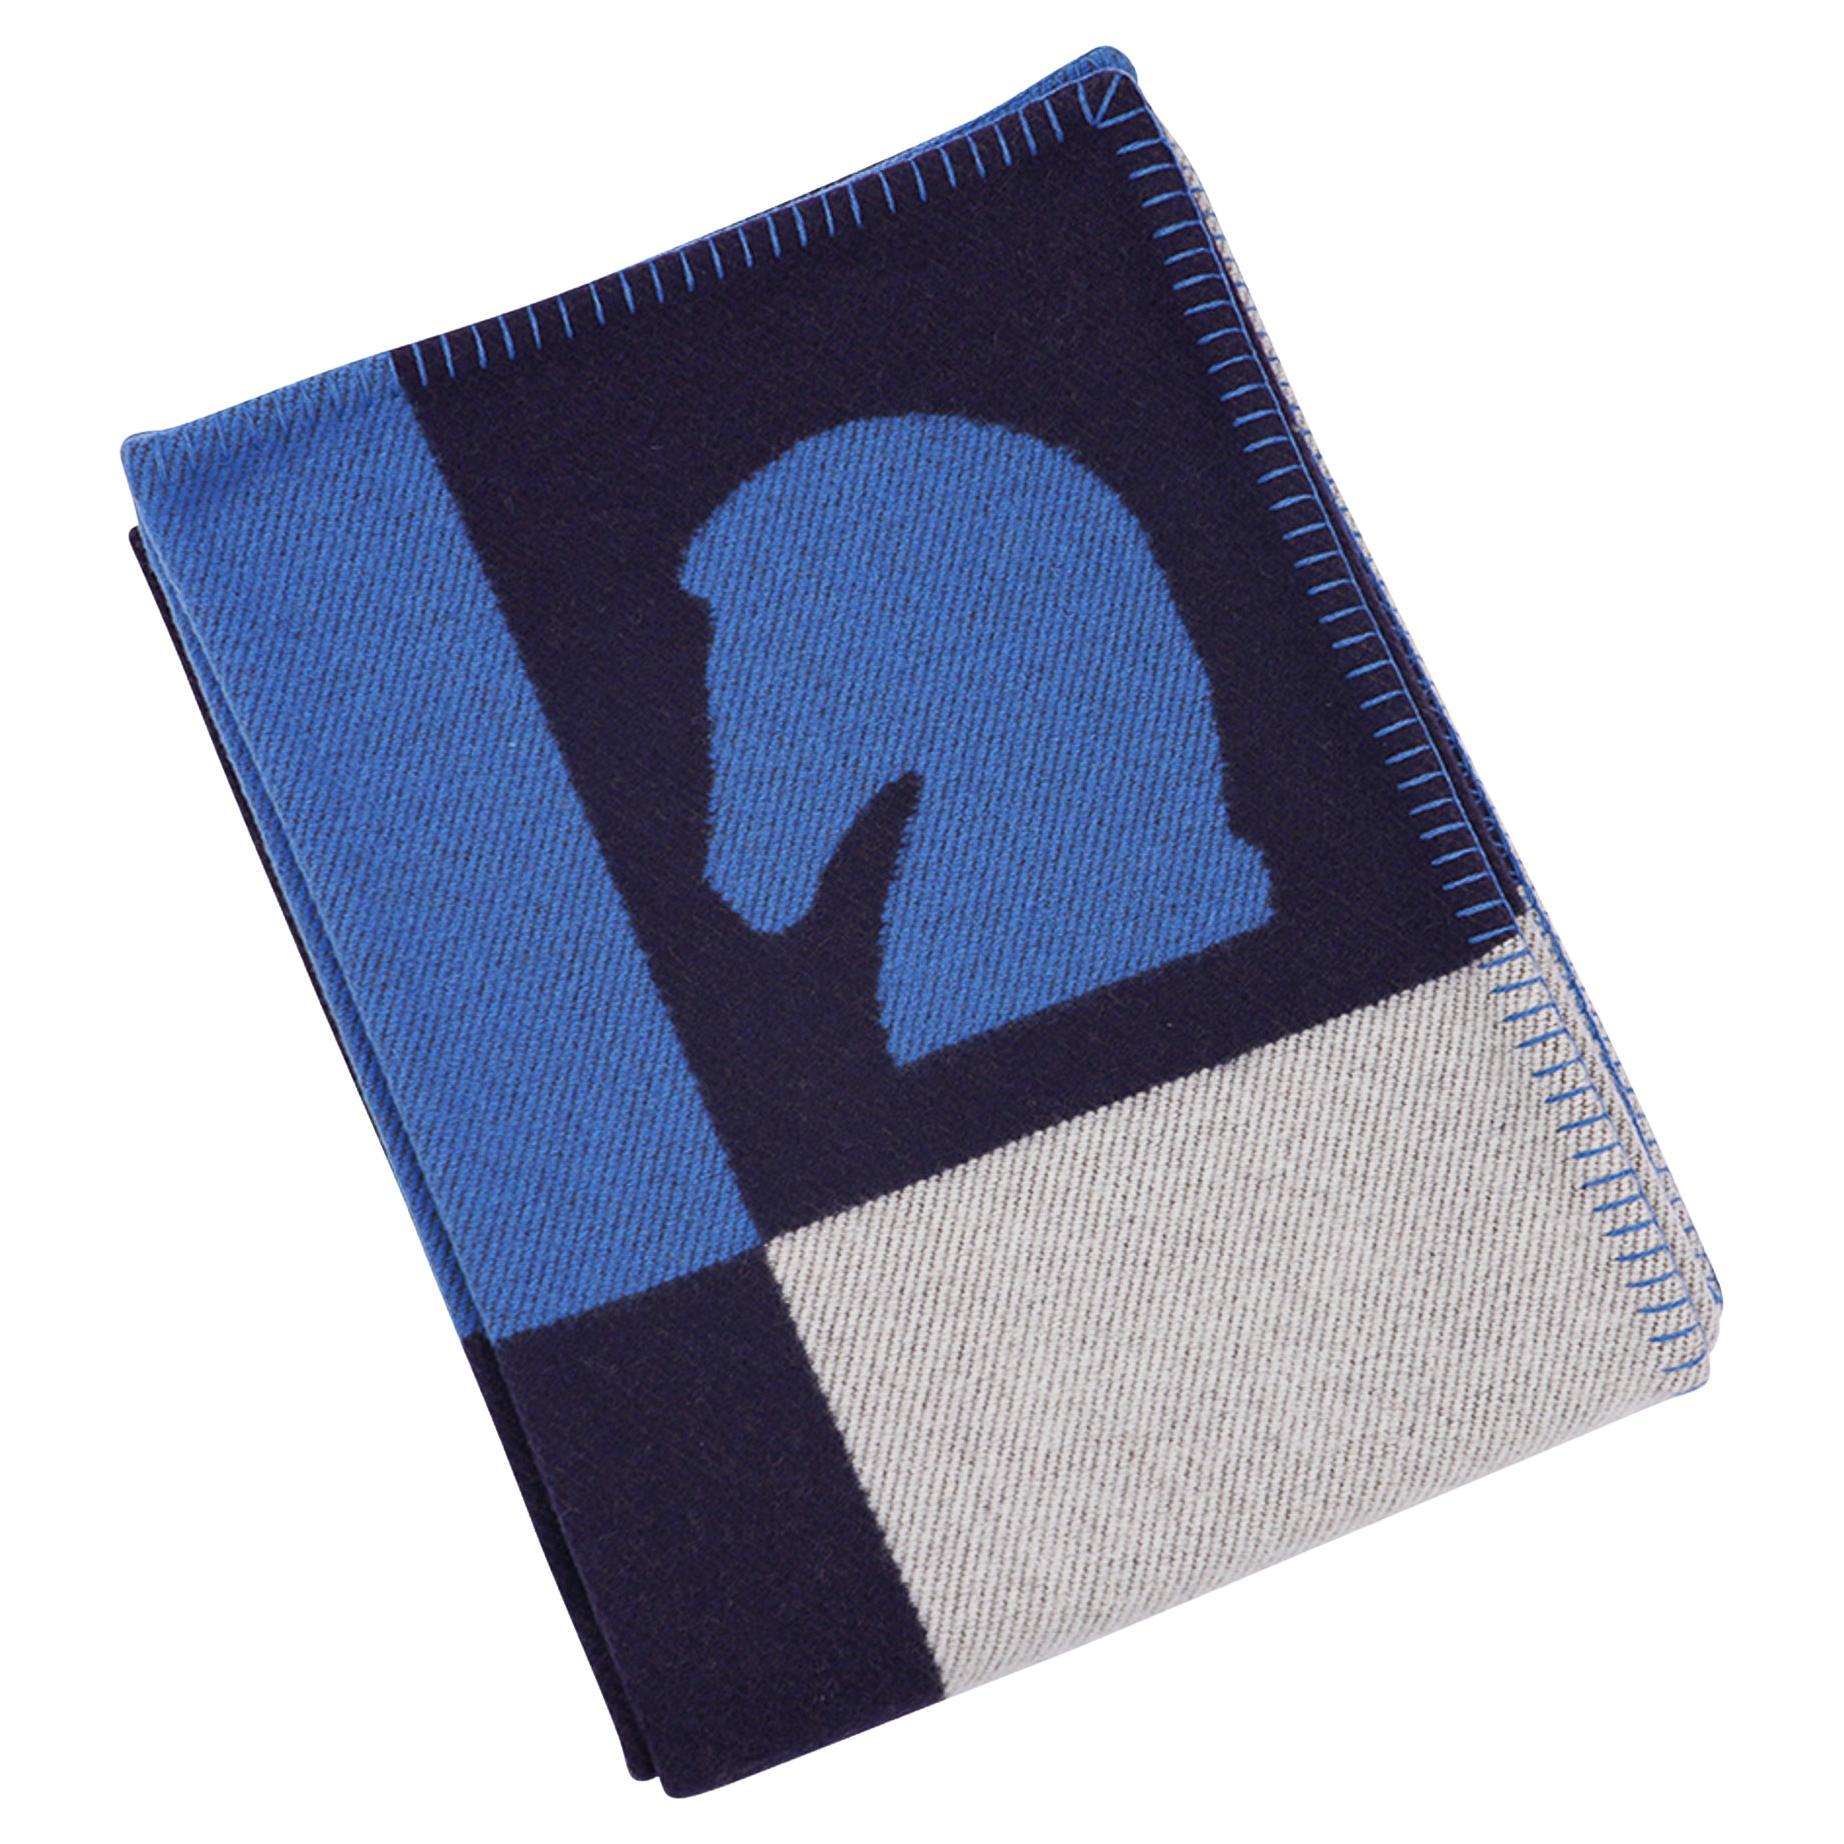 Hermes Limited Edition Samarcande Blanket Marine Wool / Cashmere 